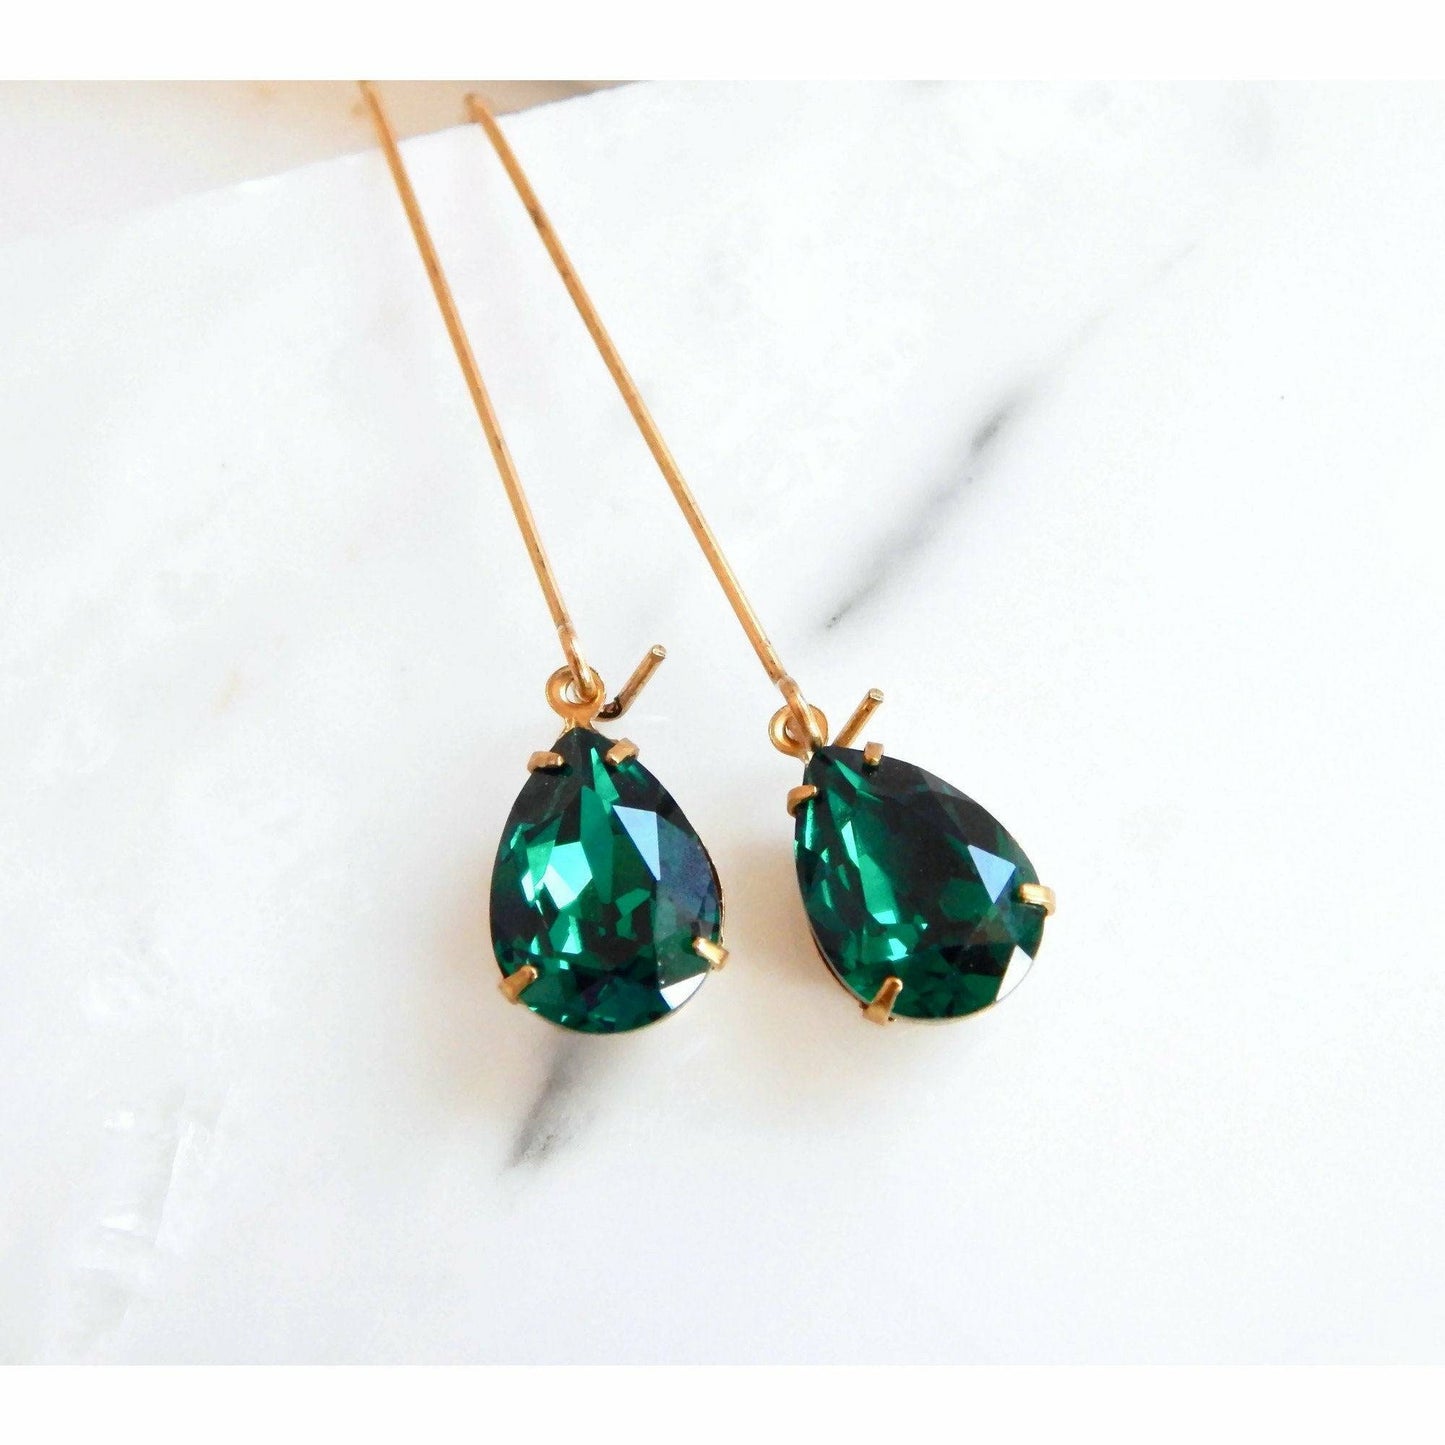 Teardrop emerald green crystal earrings